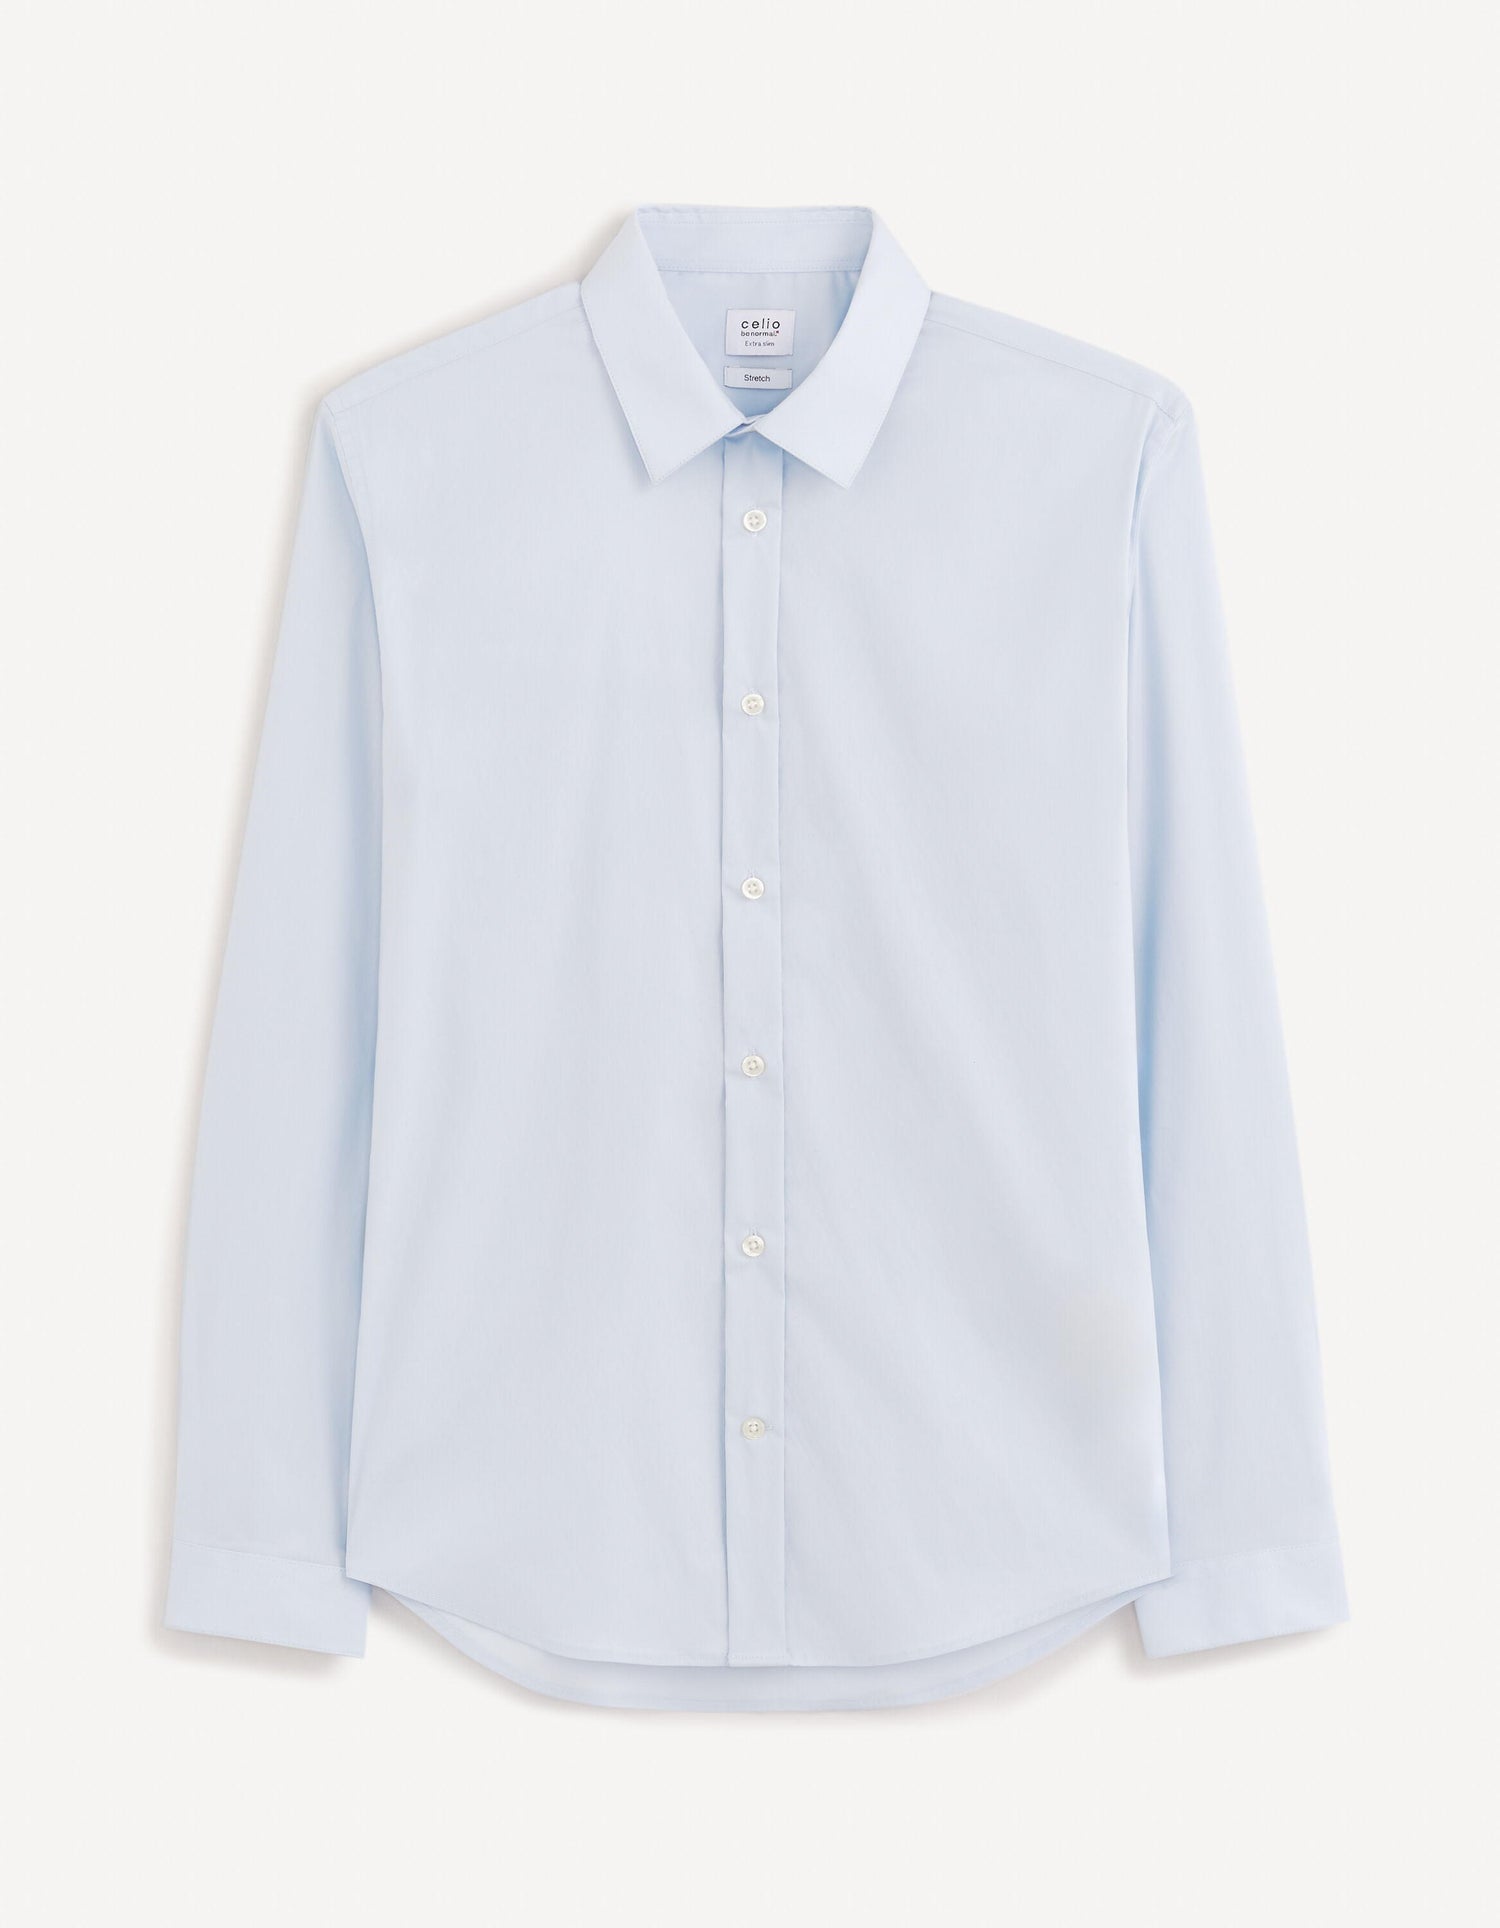 Extra Slim Stretch Cotton Shirt_VAXAVIER_LIGHT BLUE 01_02